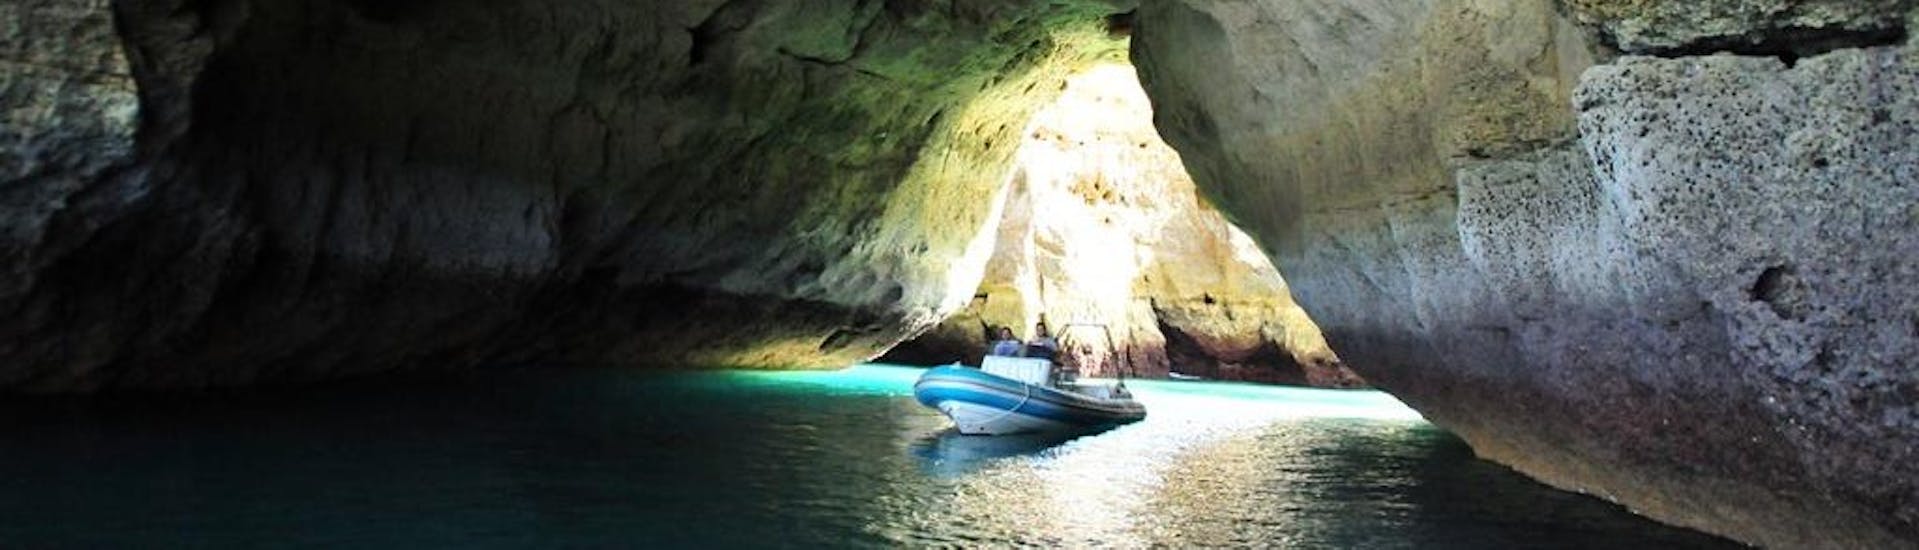 Sicht auf Boot in Höhlen auf der Privaten Bootstour zur Benagil-Höhle & Praia da Marinha mit Seadventure Boat Trips Algarve.